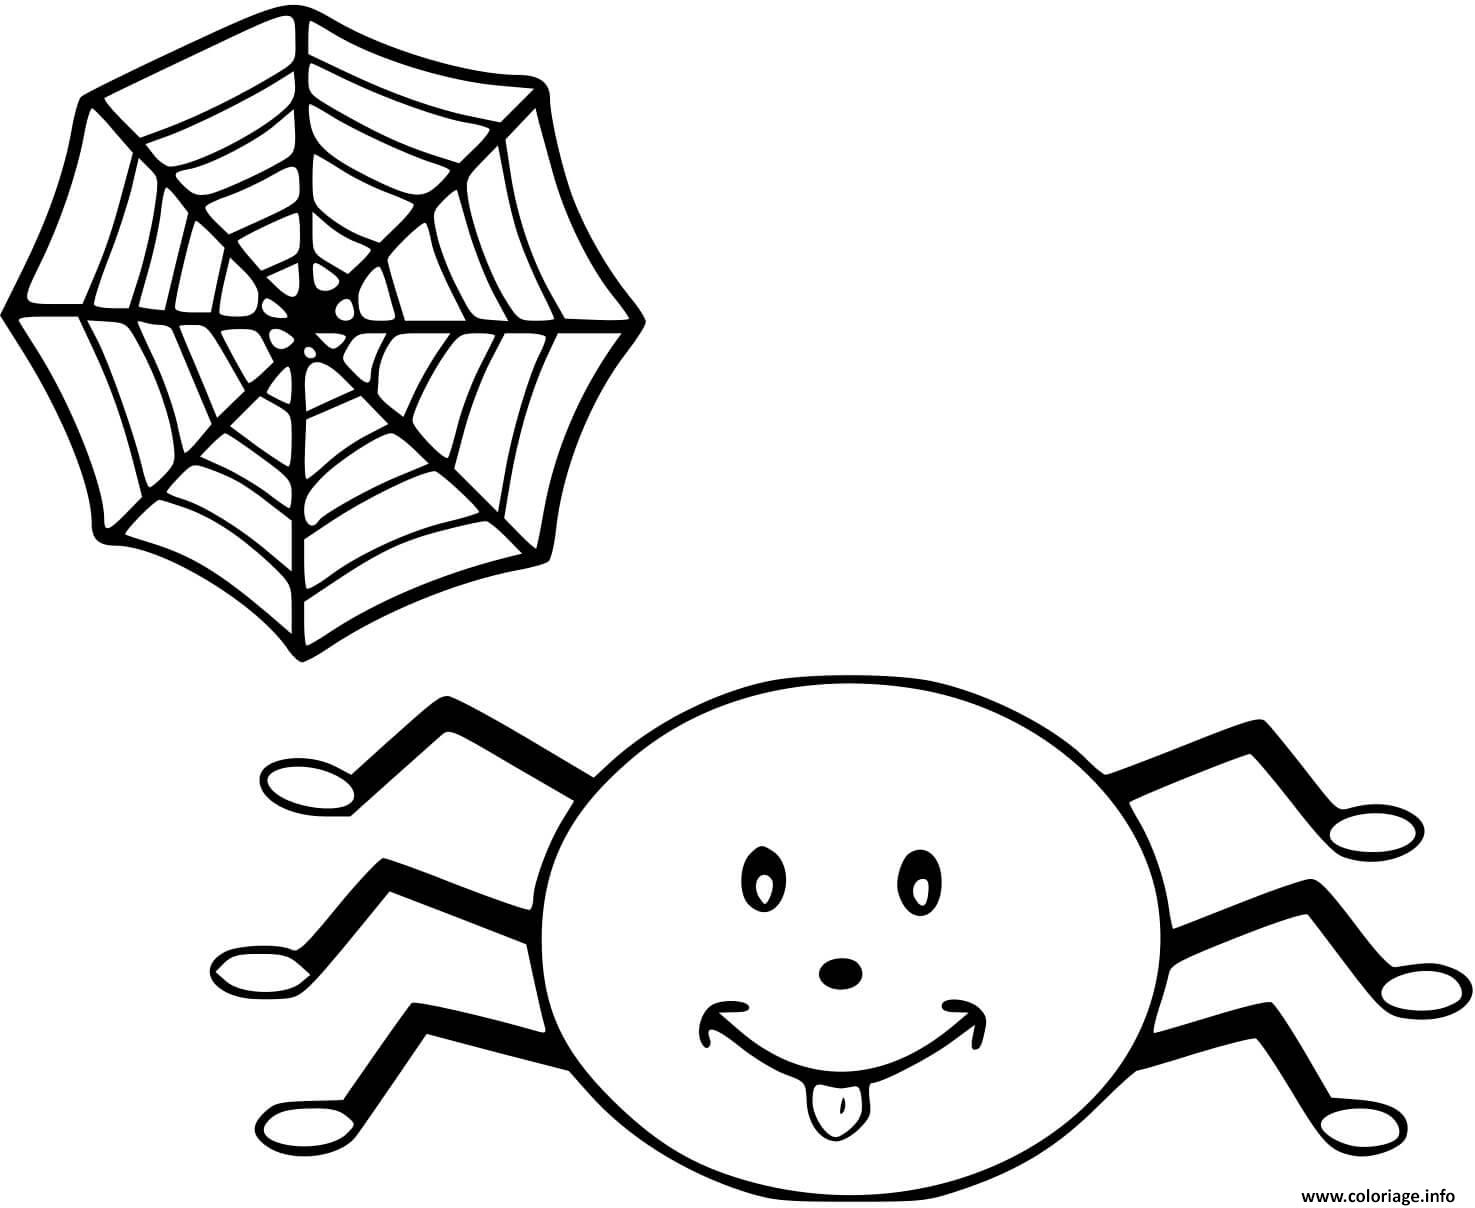 Раскраска паук для детей дошкольного возраста